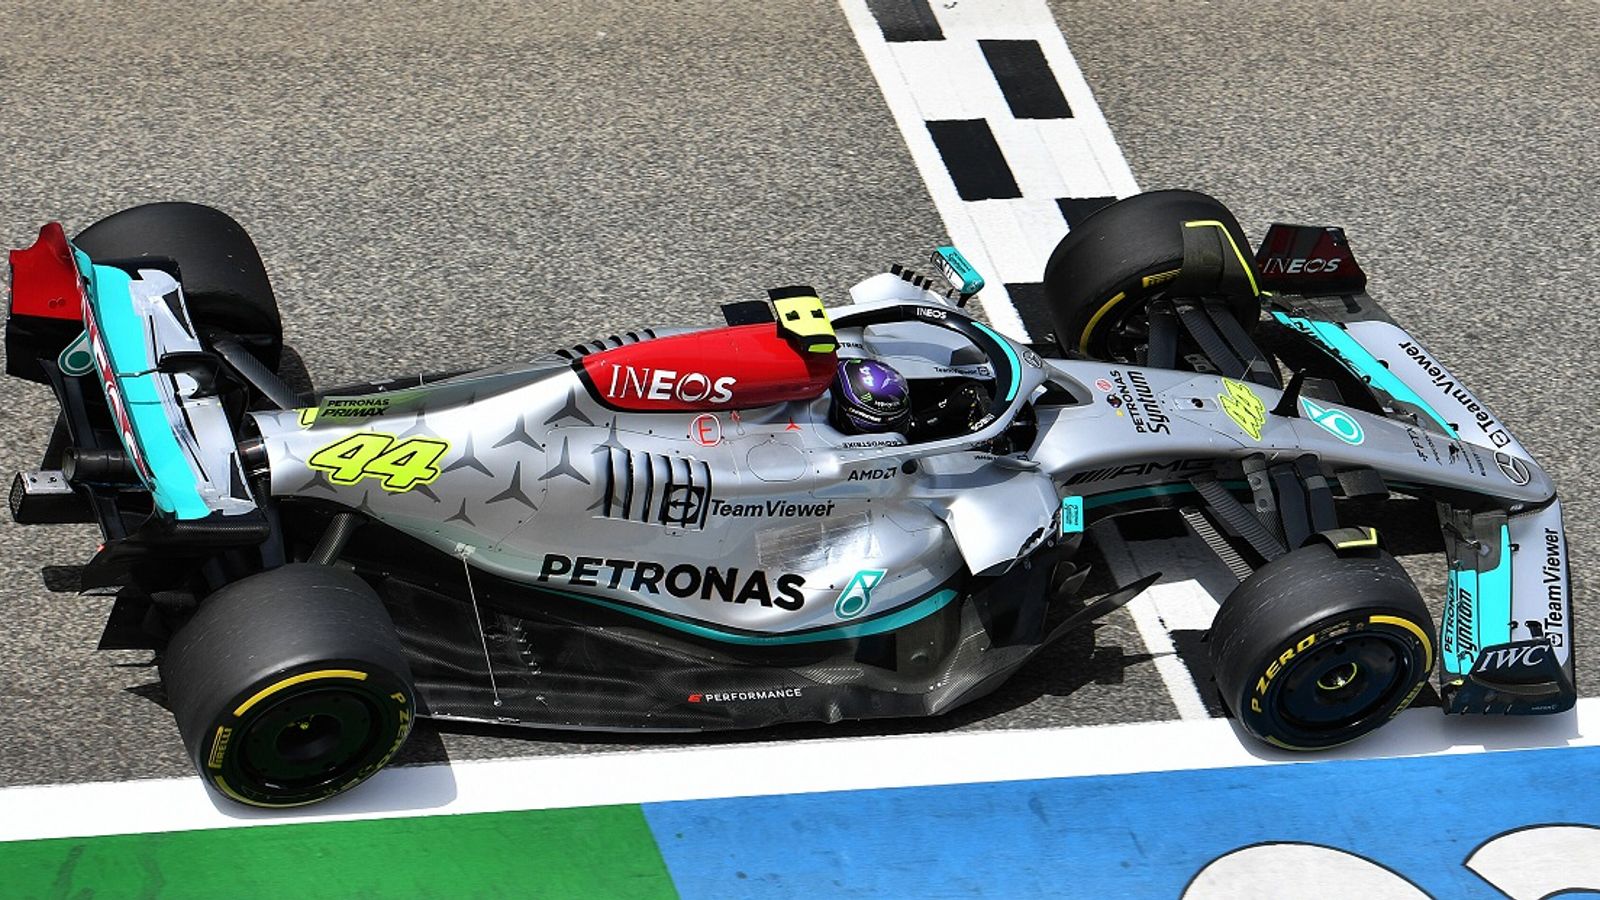 Formel 1 News Mercedes mit Problemen, Hamilton pessimistisch Alles nur ein Bluff? Formel 1 News Sky Sport